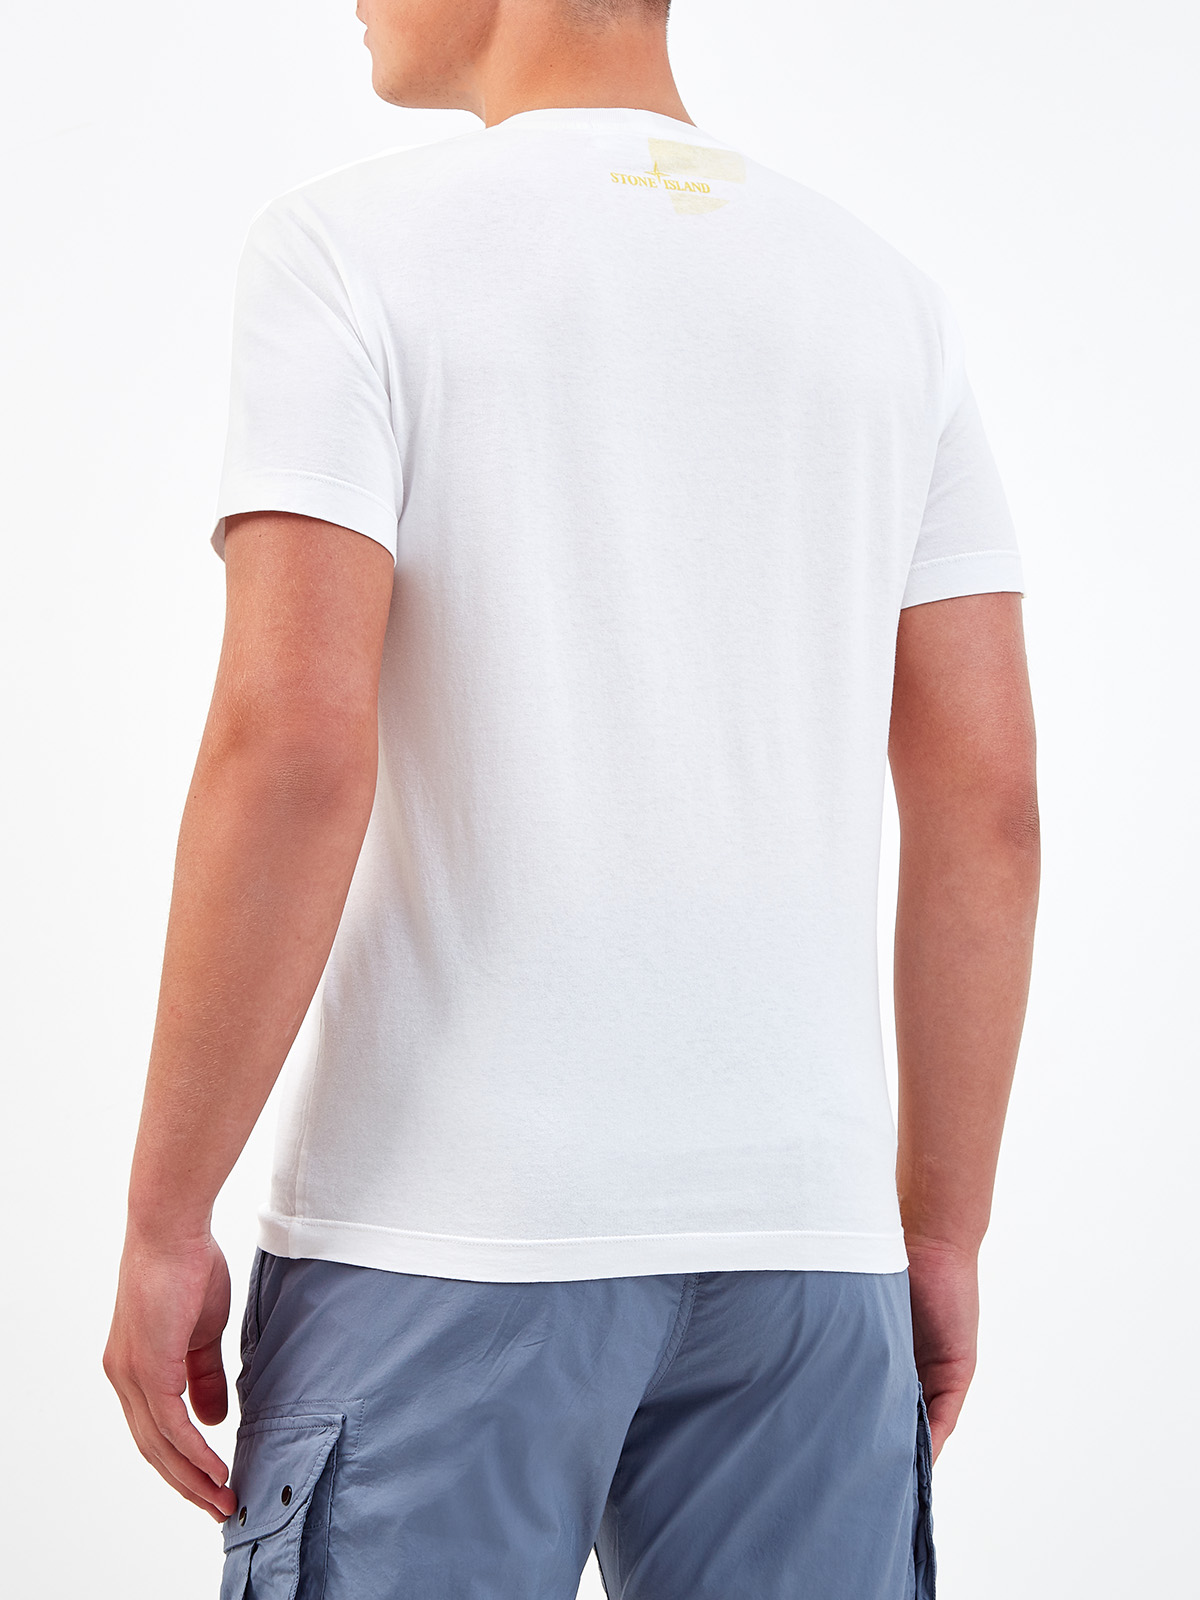 Хлопковая футболка с динамичным макро-принтом STONE ISLAND, цвет белый, размер S;M;L;XL;2XL;3XL - фото 4